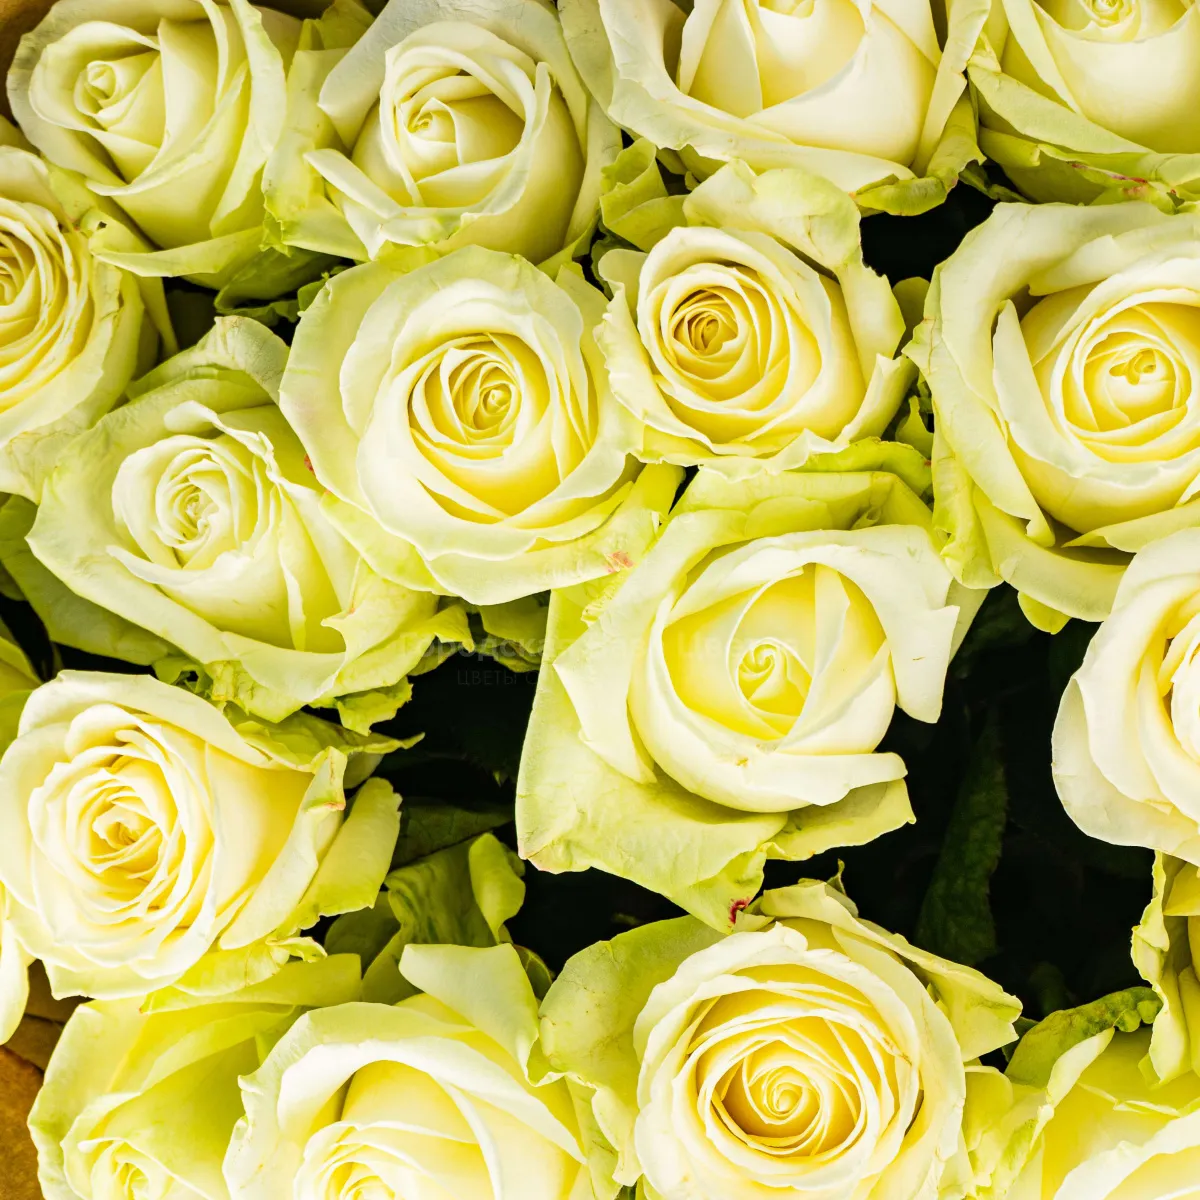 19 бело-зеленых роз (60 см)